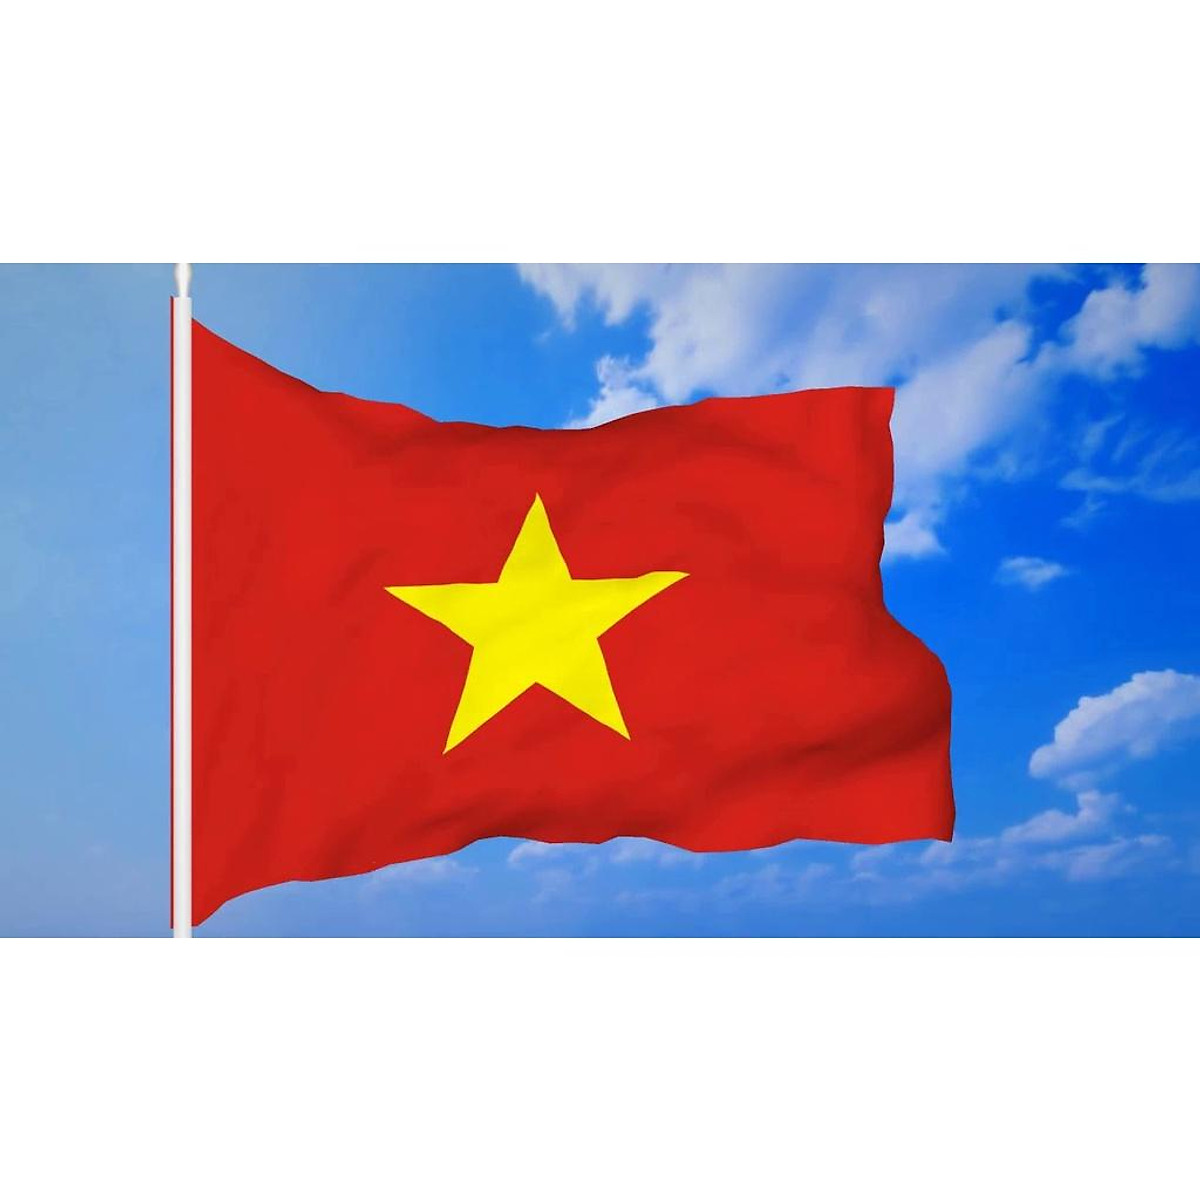 Cờ Tổ Quốc Satanh: Cờ Tổ quốc Satanh là biểu tượng được sử dụng trong cuộc đấu tranh LY ở Nam Việt Nam. Đây là một biểu tượng quan trọng cho những người Việt Nam muốn bảo vệ quyền tự do của mình. Bức tranh này như một lời nhắc nhở cho chúng ta giữ gìn sự tự do, độc lập và chủ quyền của đất nước.